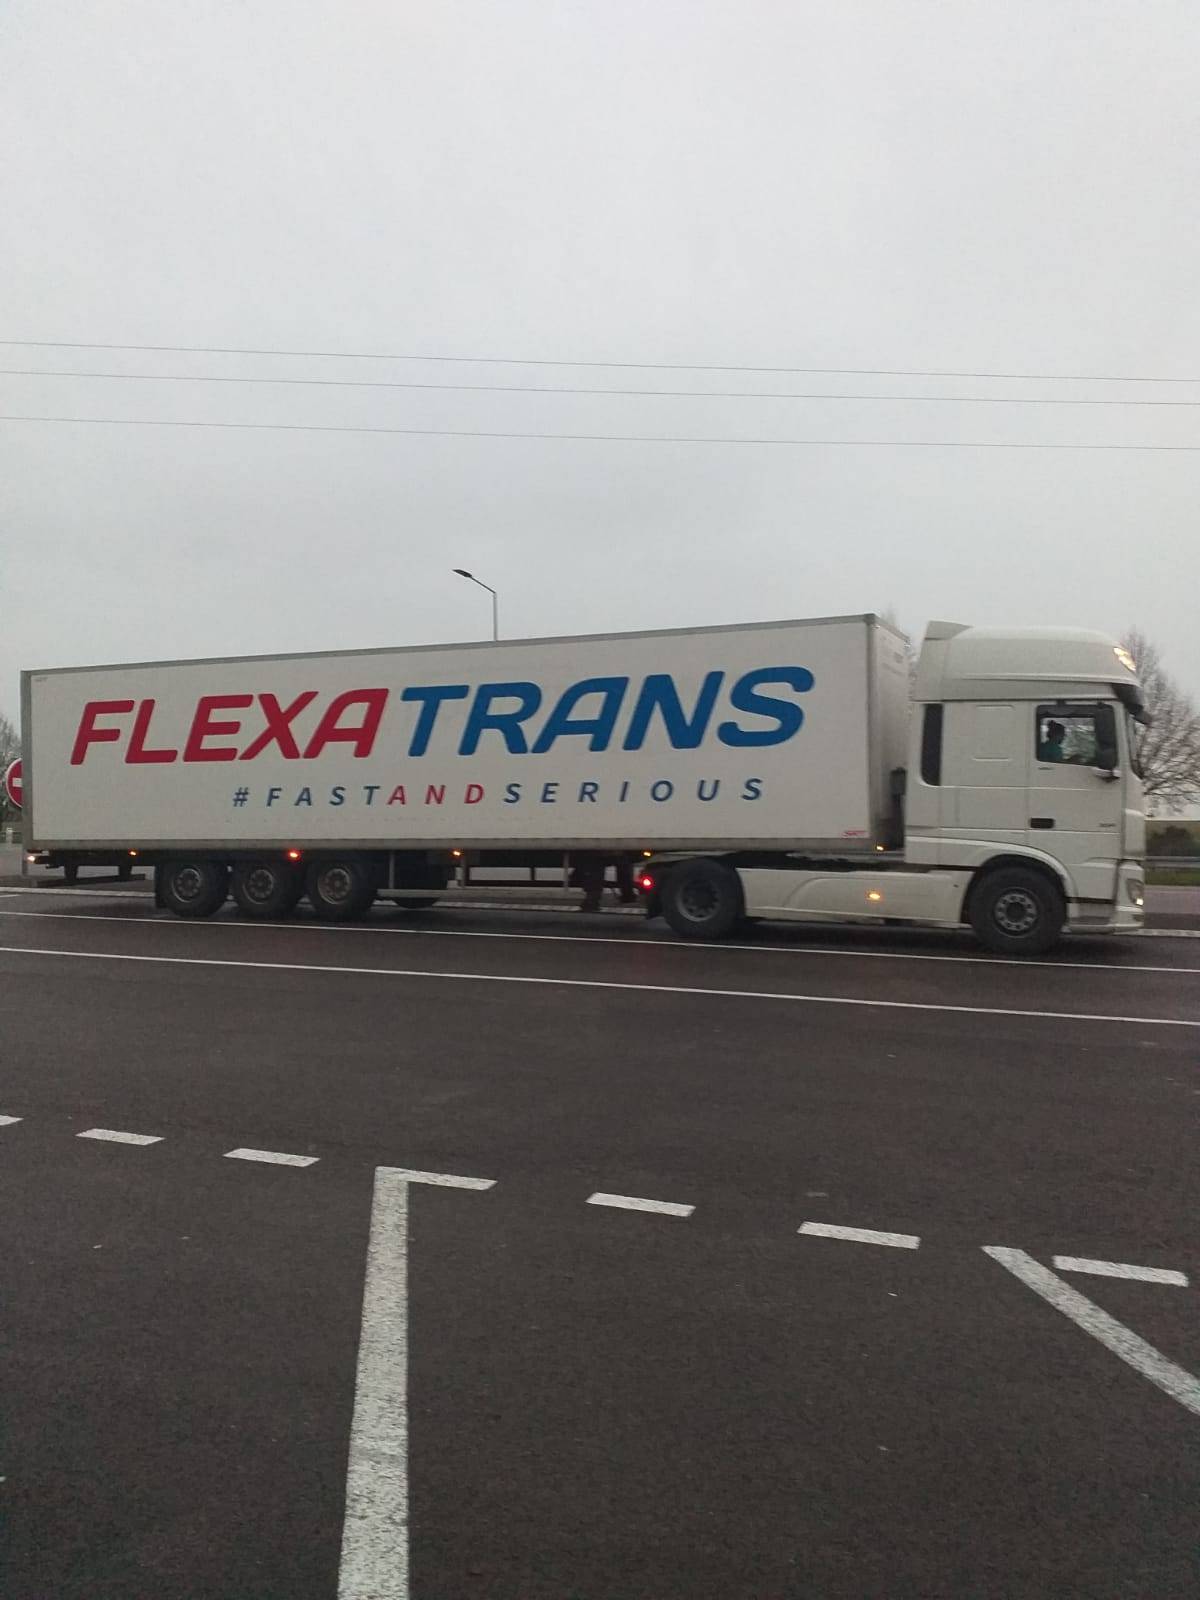 Flexatrans transporteur de marchandises à l'international